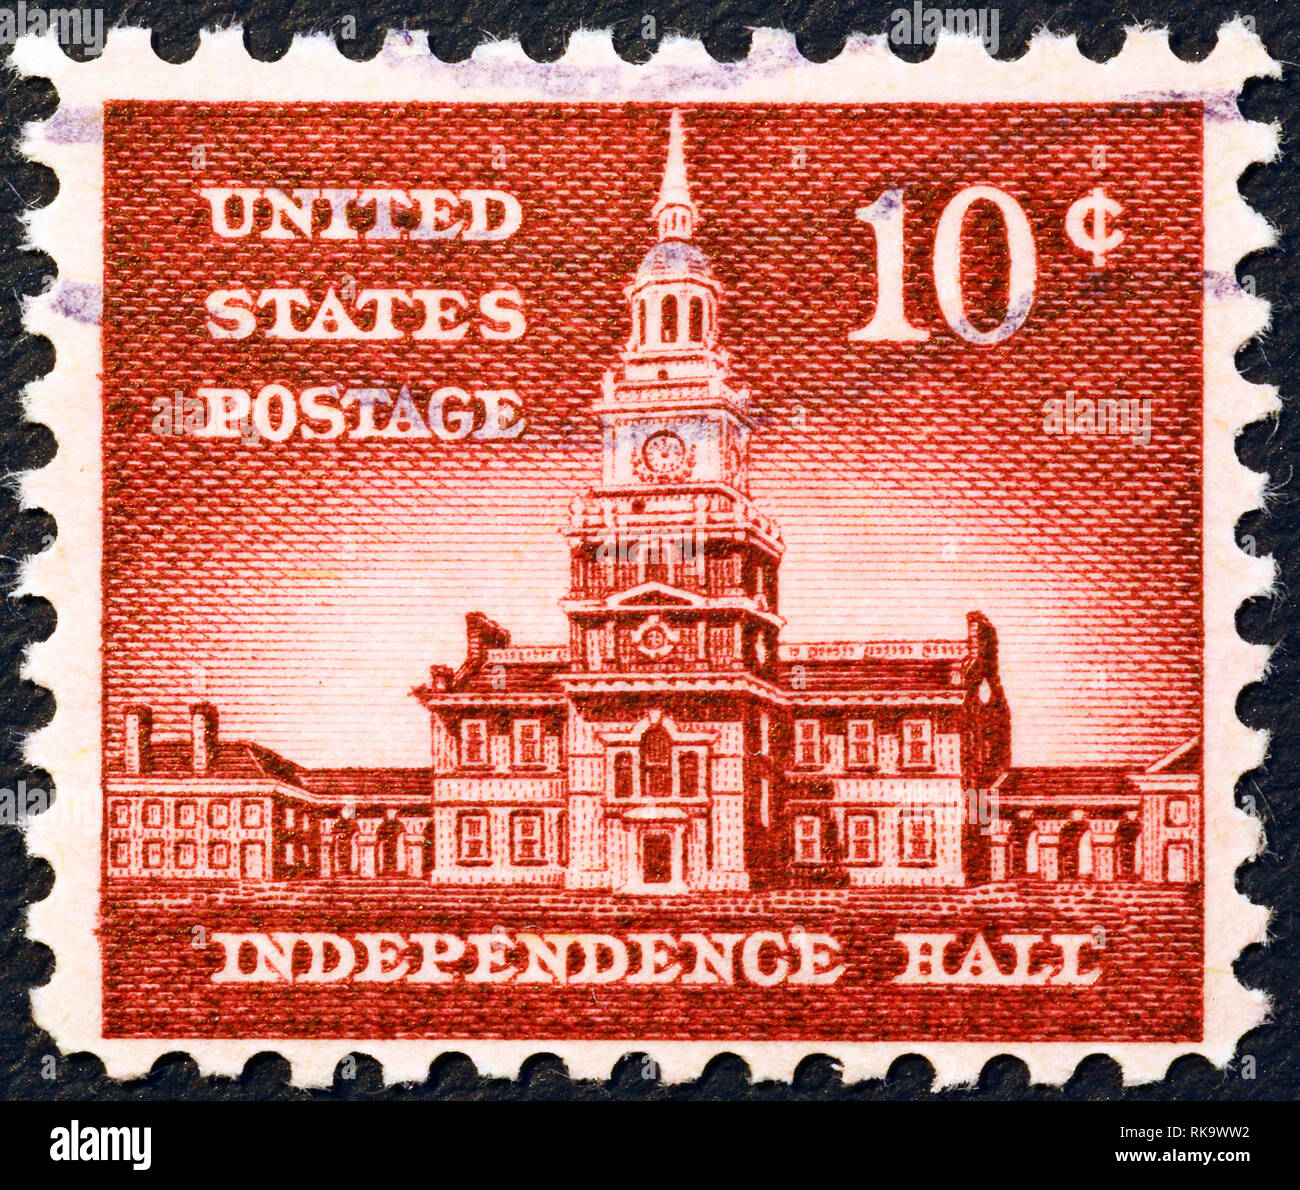 L'Independence Hall de Phildelphia sur timbre américain vintage Banque D'Images